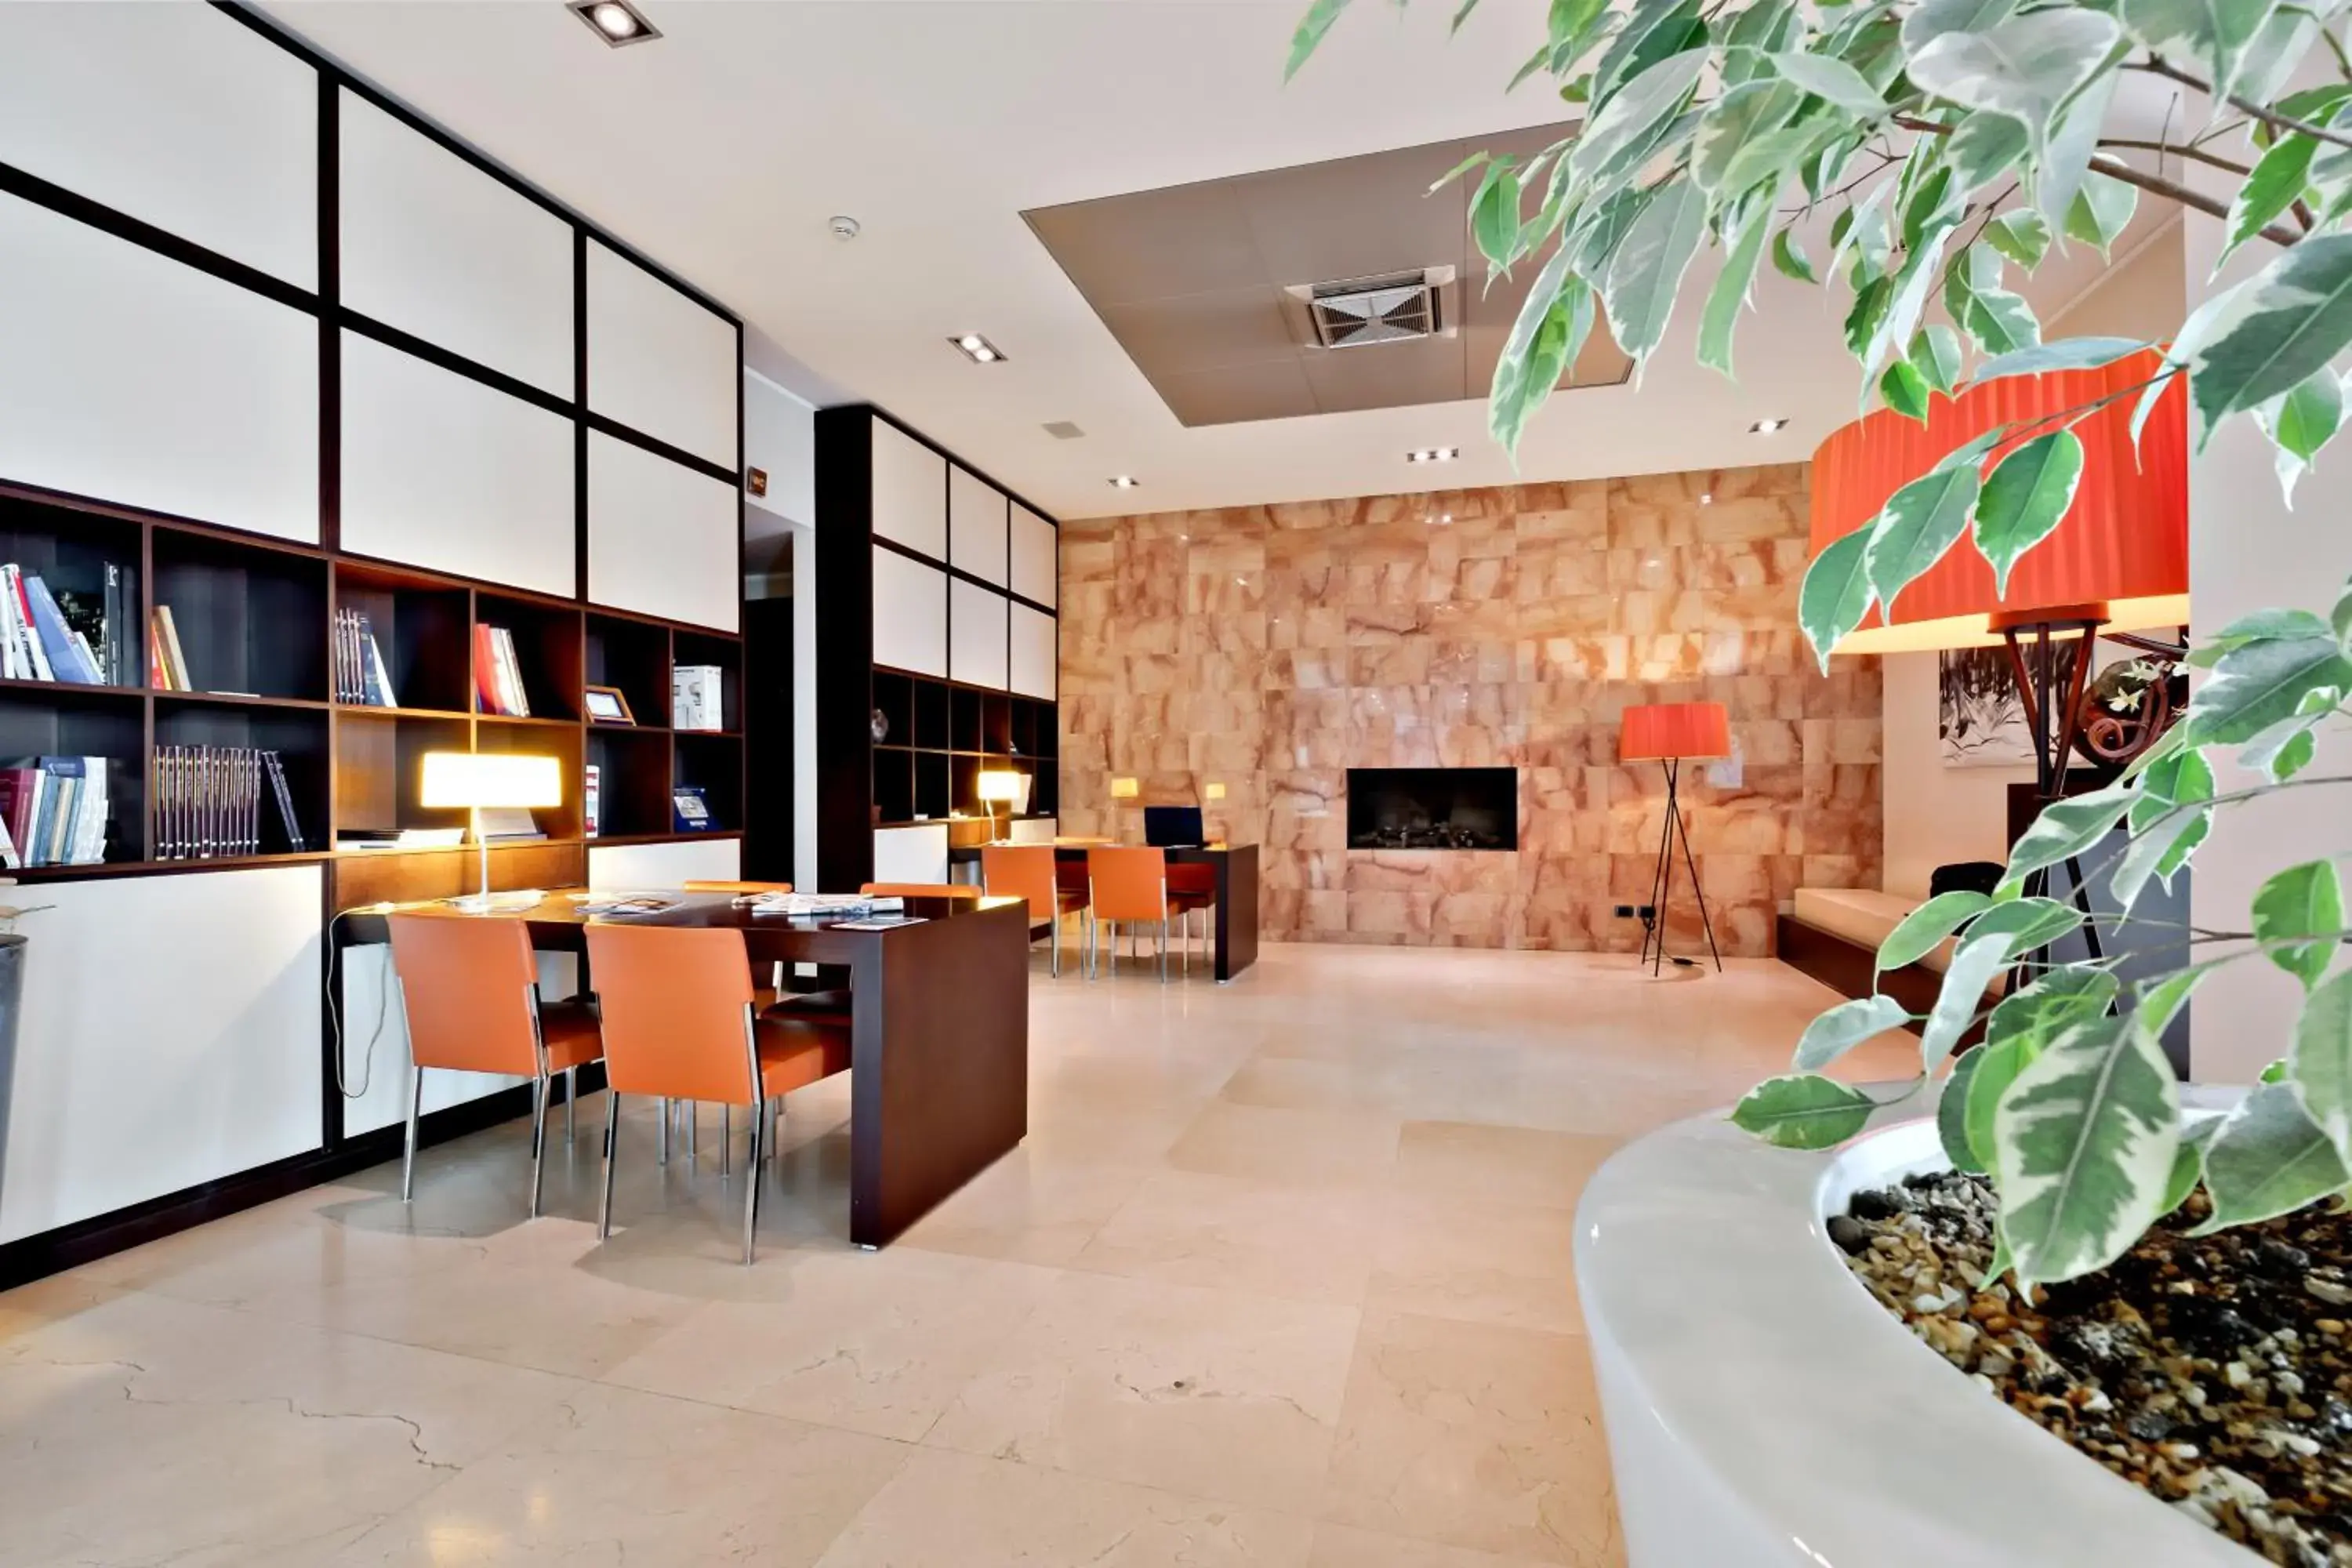 Lobby or reception, Lobby/Reception in Italiana Hotels Cosenza